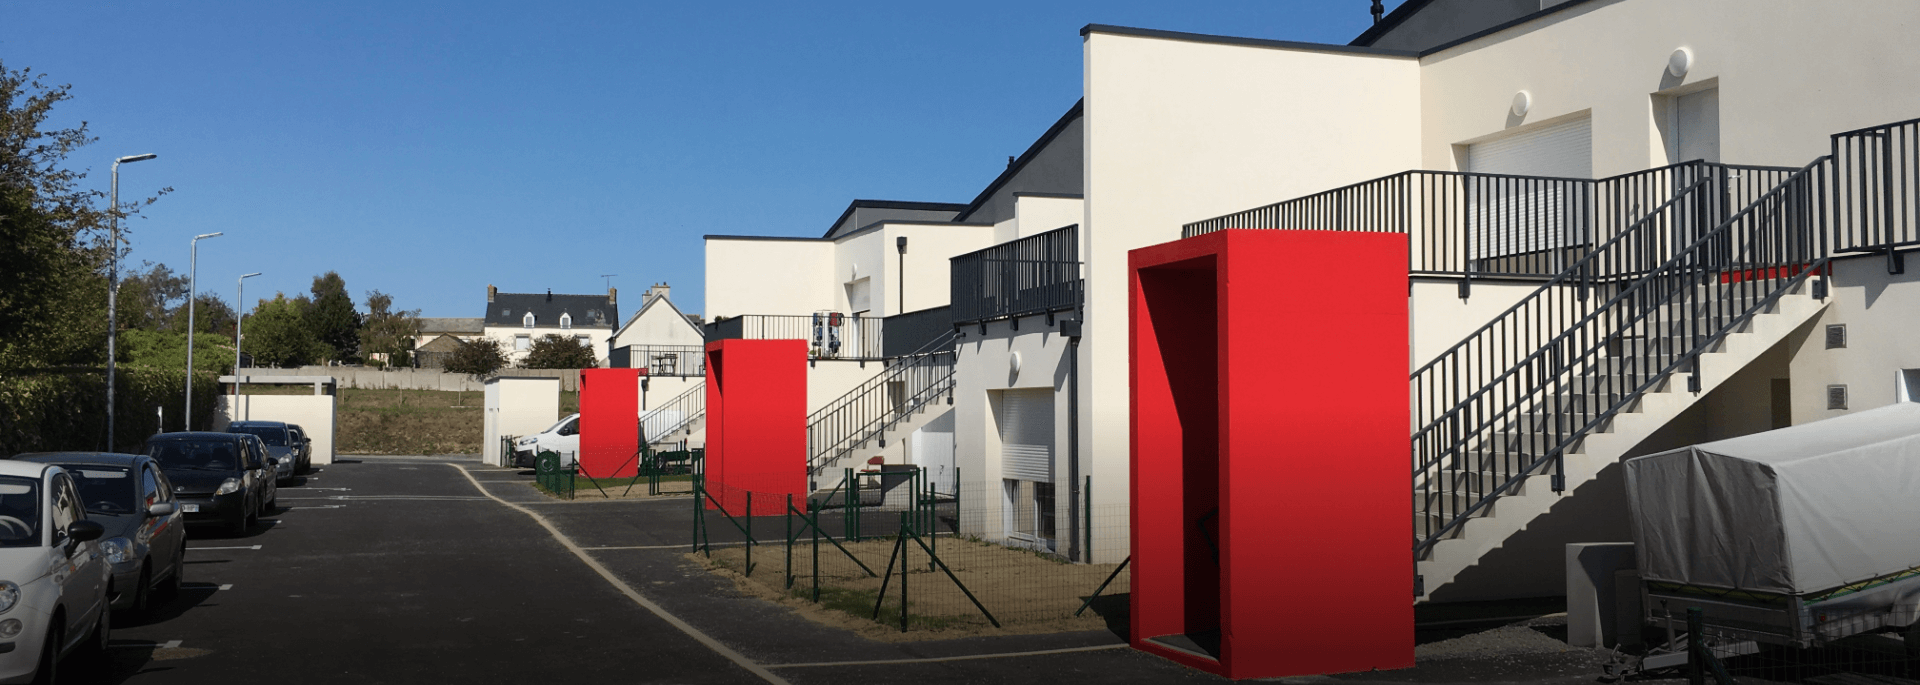 GLA Architectes Garçonnet Loncle Architectes Saint Brieuc Côtes d'Amort 22 - Création de 12 logements BSB Langueux